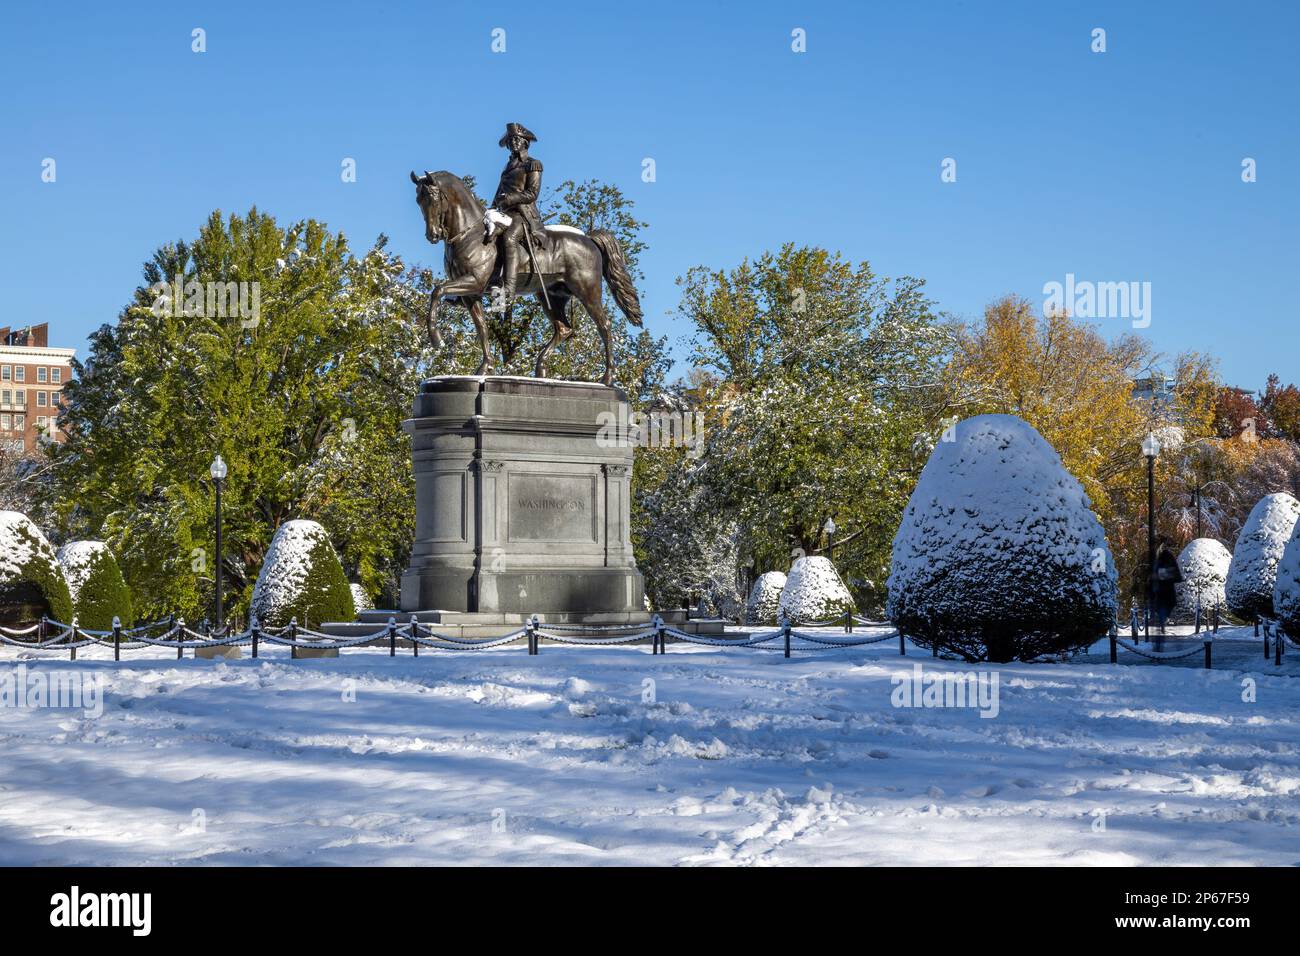 Statua di George Washington nel Giardino pubblico di Boston nella neve d'inverno, Boston, Massachusetts, New England, Stati Uniti d'America, Nord America Foto Stock